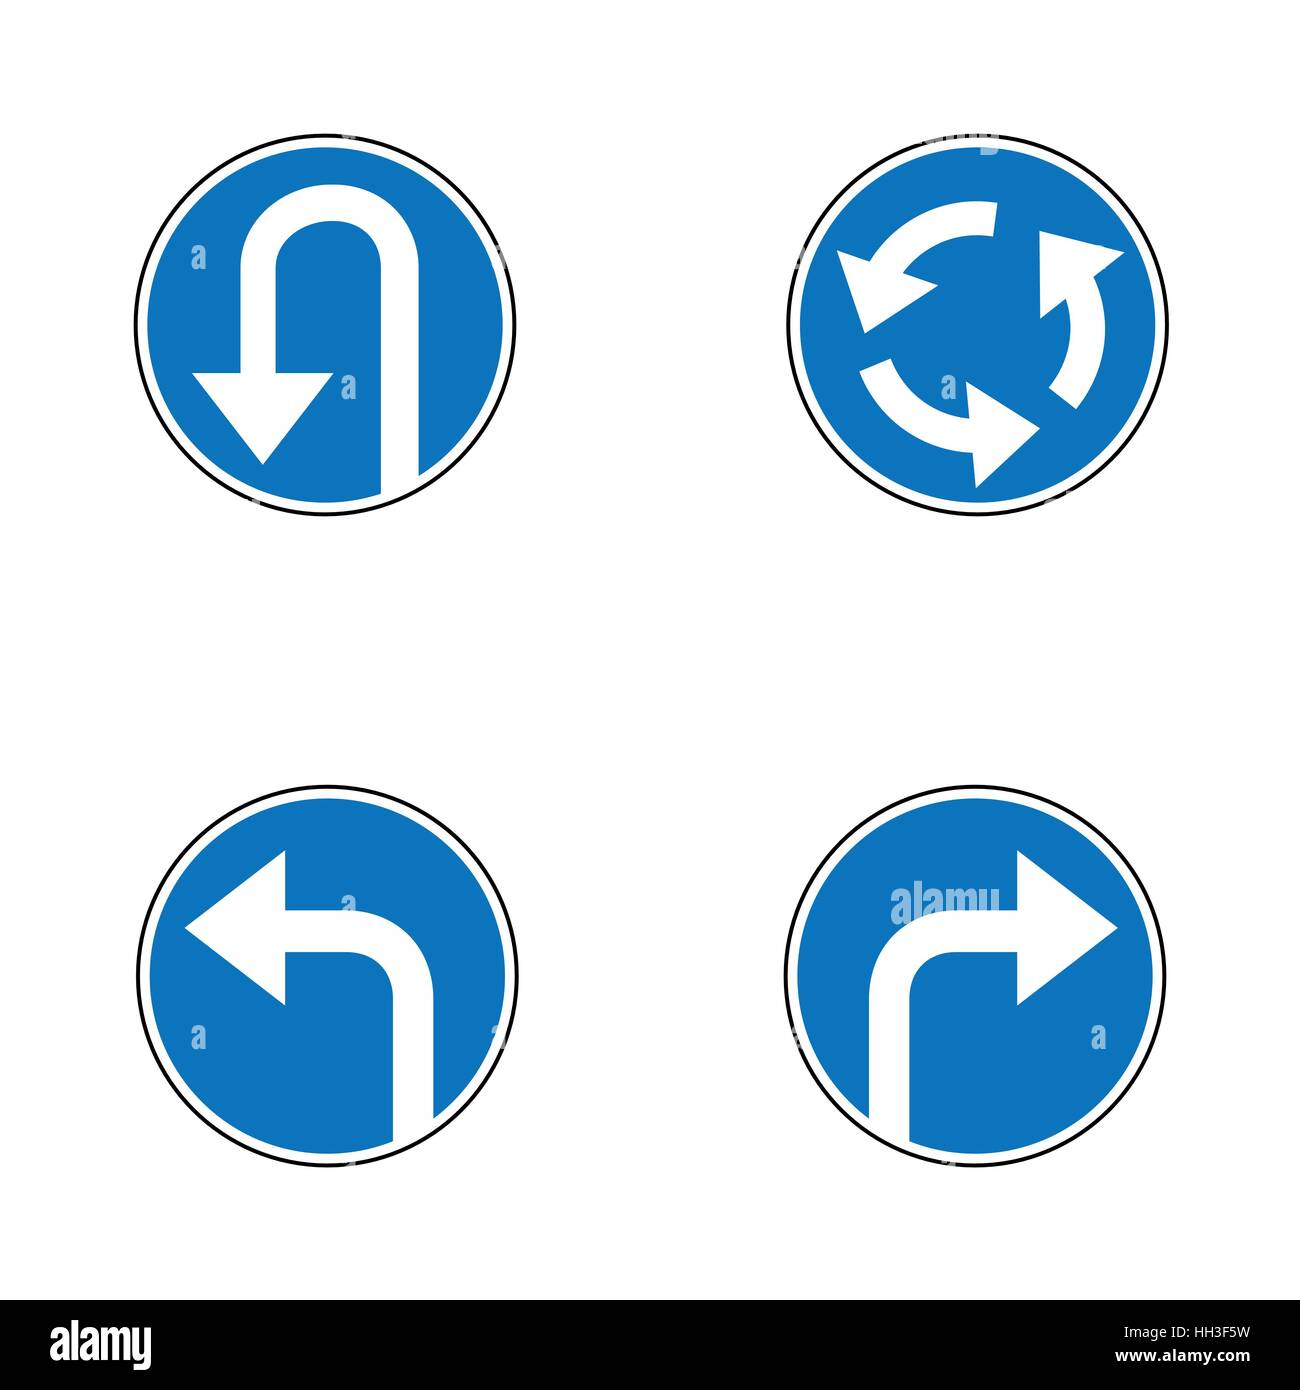 Vektor-Set Pfeil Straße obligatorisch blau Runde Verkehrszeichen, eine Kehrtwende, biegen Sie rechts und links und Kreisverkehr - Verkehrszeichen isolierten auf weißen Hintergrund in blu Stock Vektor